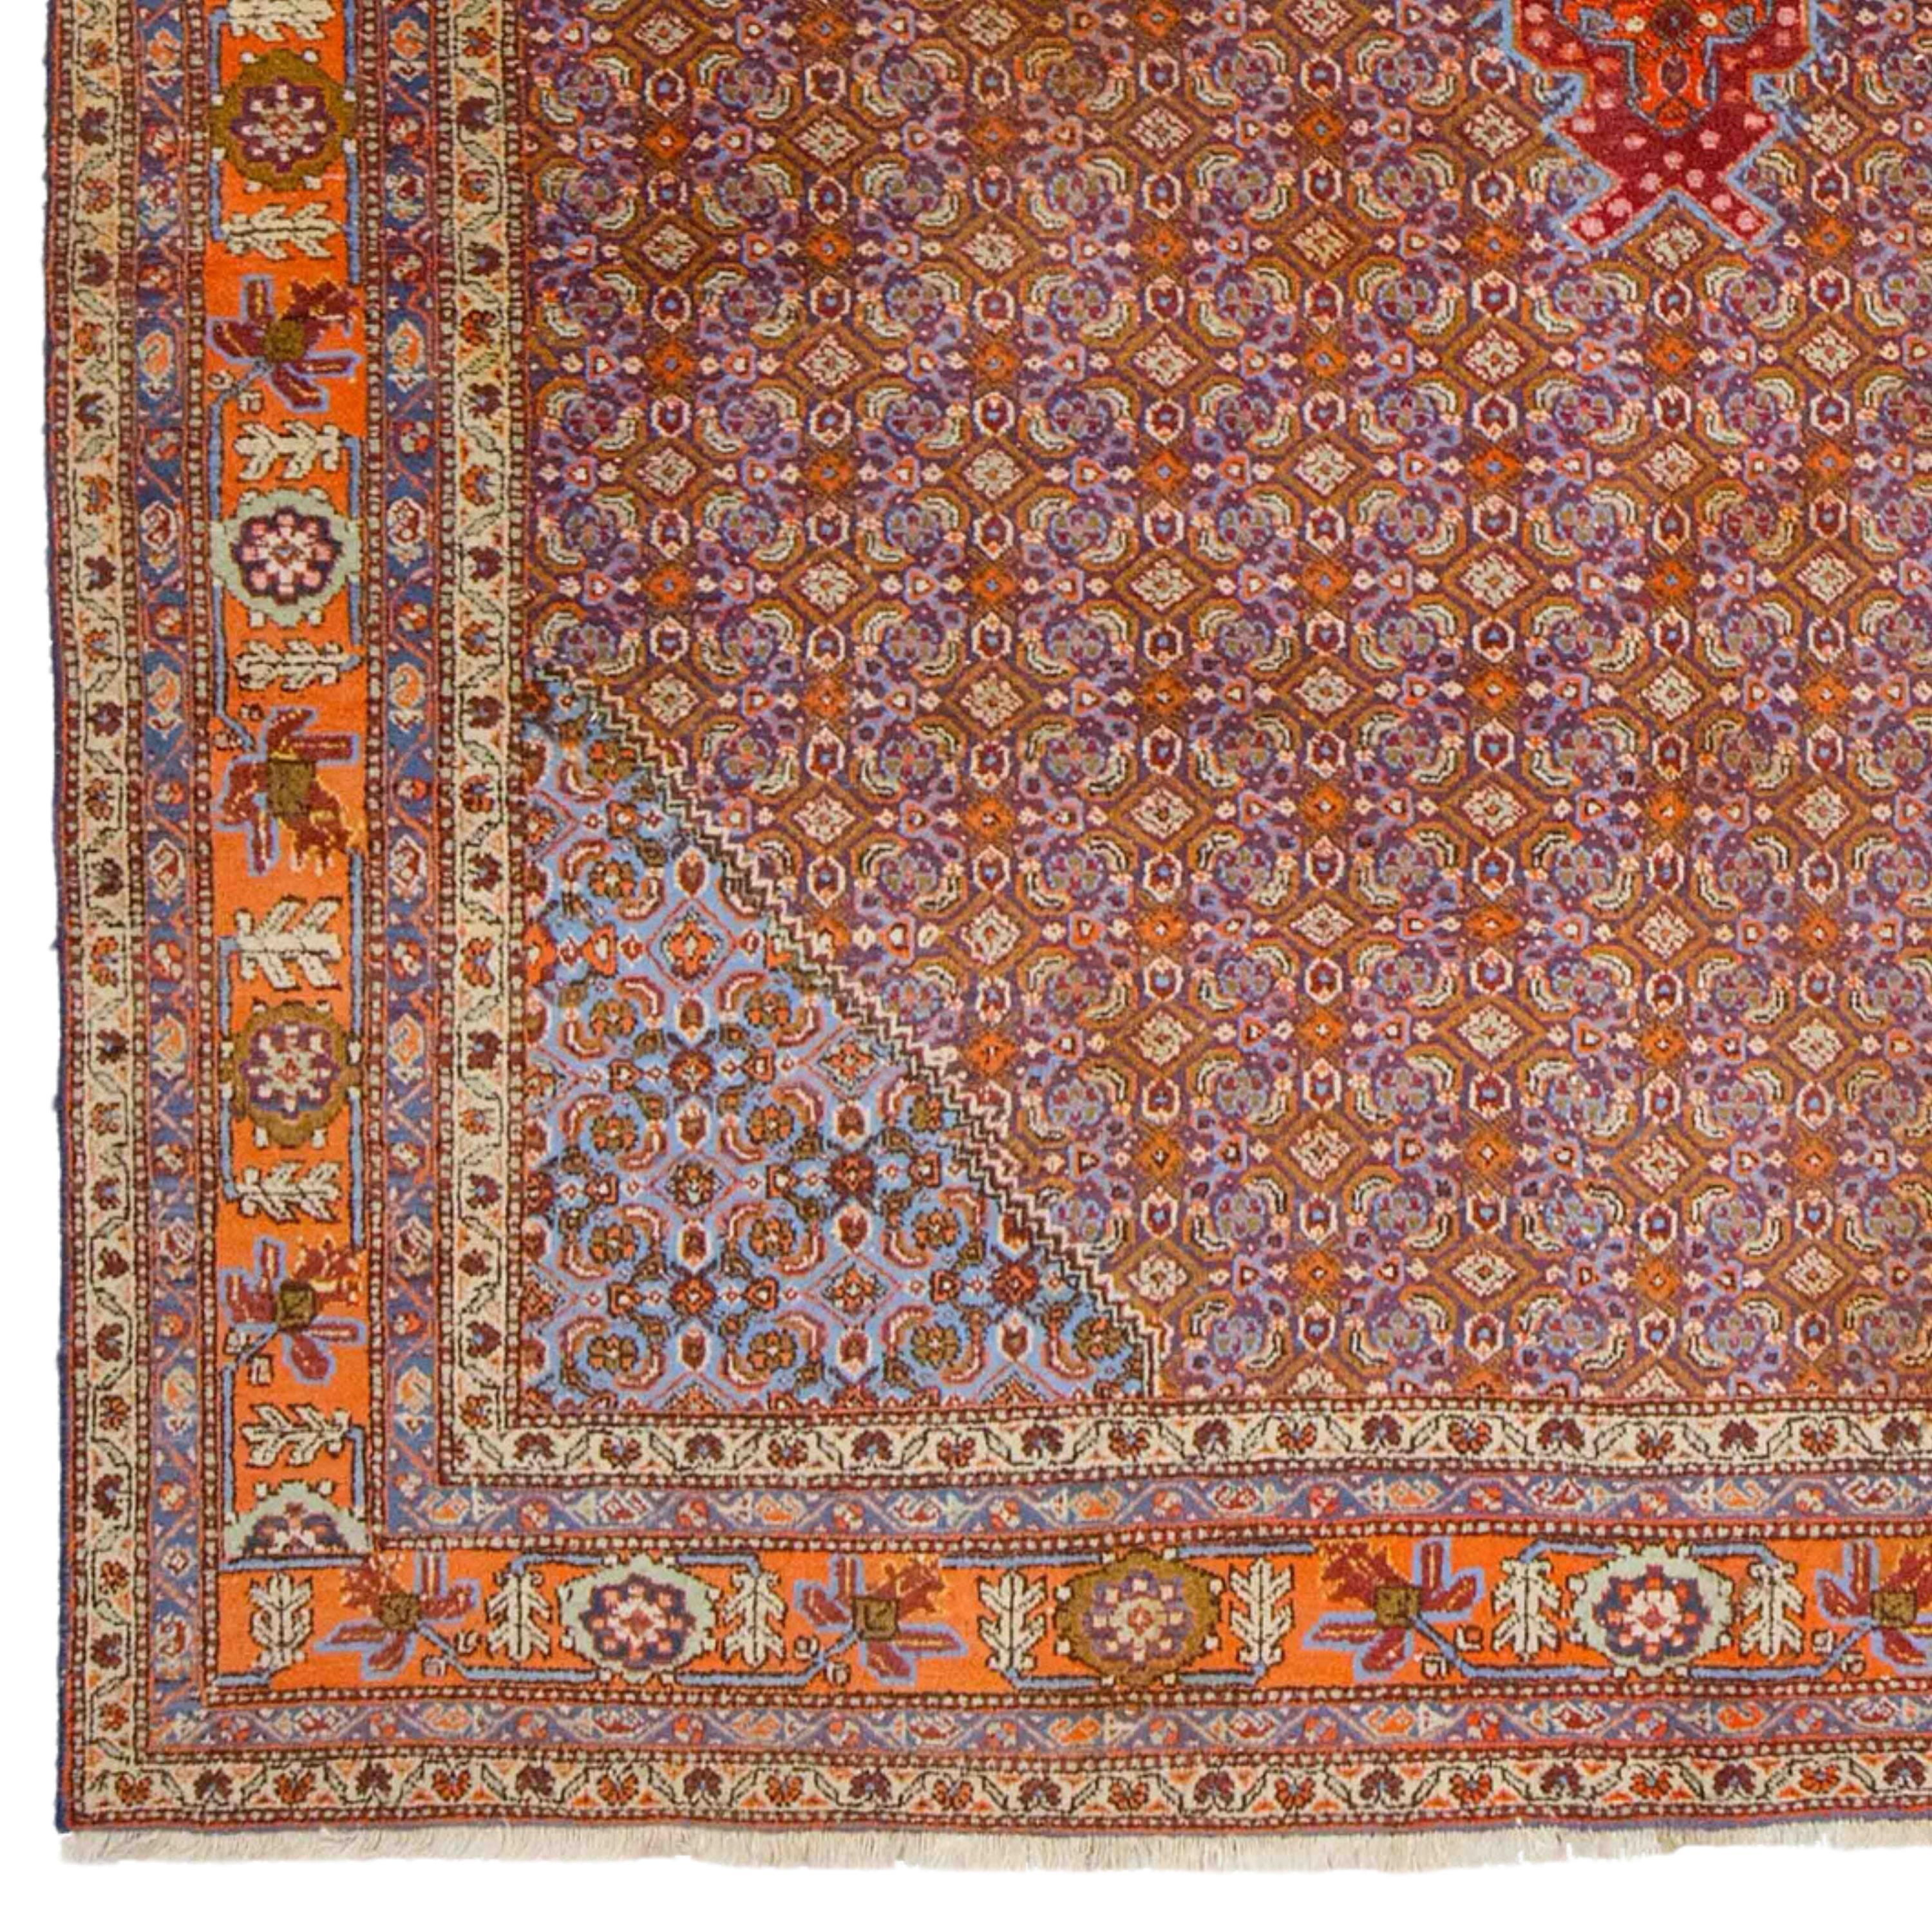 Antiker Täbris-Teppich 226x330 cm (7,41x10,82 ft) Ende 19. Jahrhundert Aserbaidschan Täbris-Teppich

Ab Mitte des 19. Jahrhunderts erlebte die kommerzielle Teppichproduktion in Aserbaidschan einen Aufschwung, und Täbris wurde zu einem der